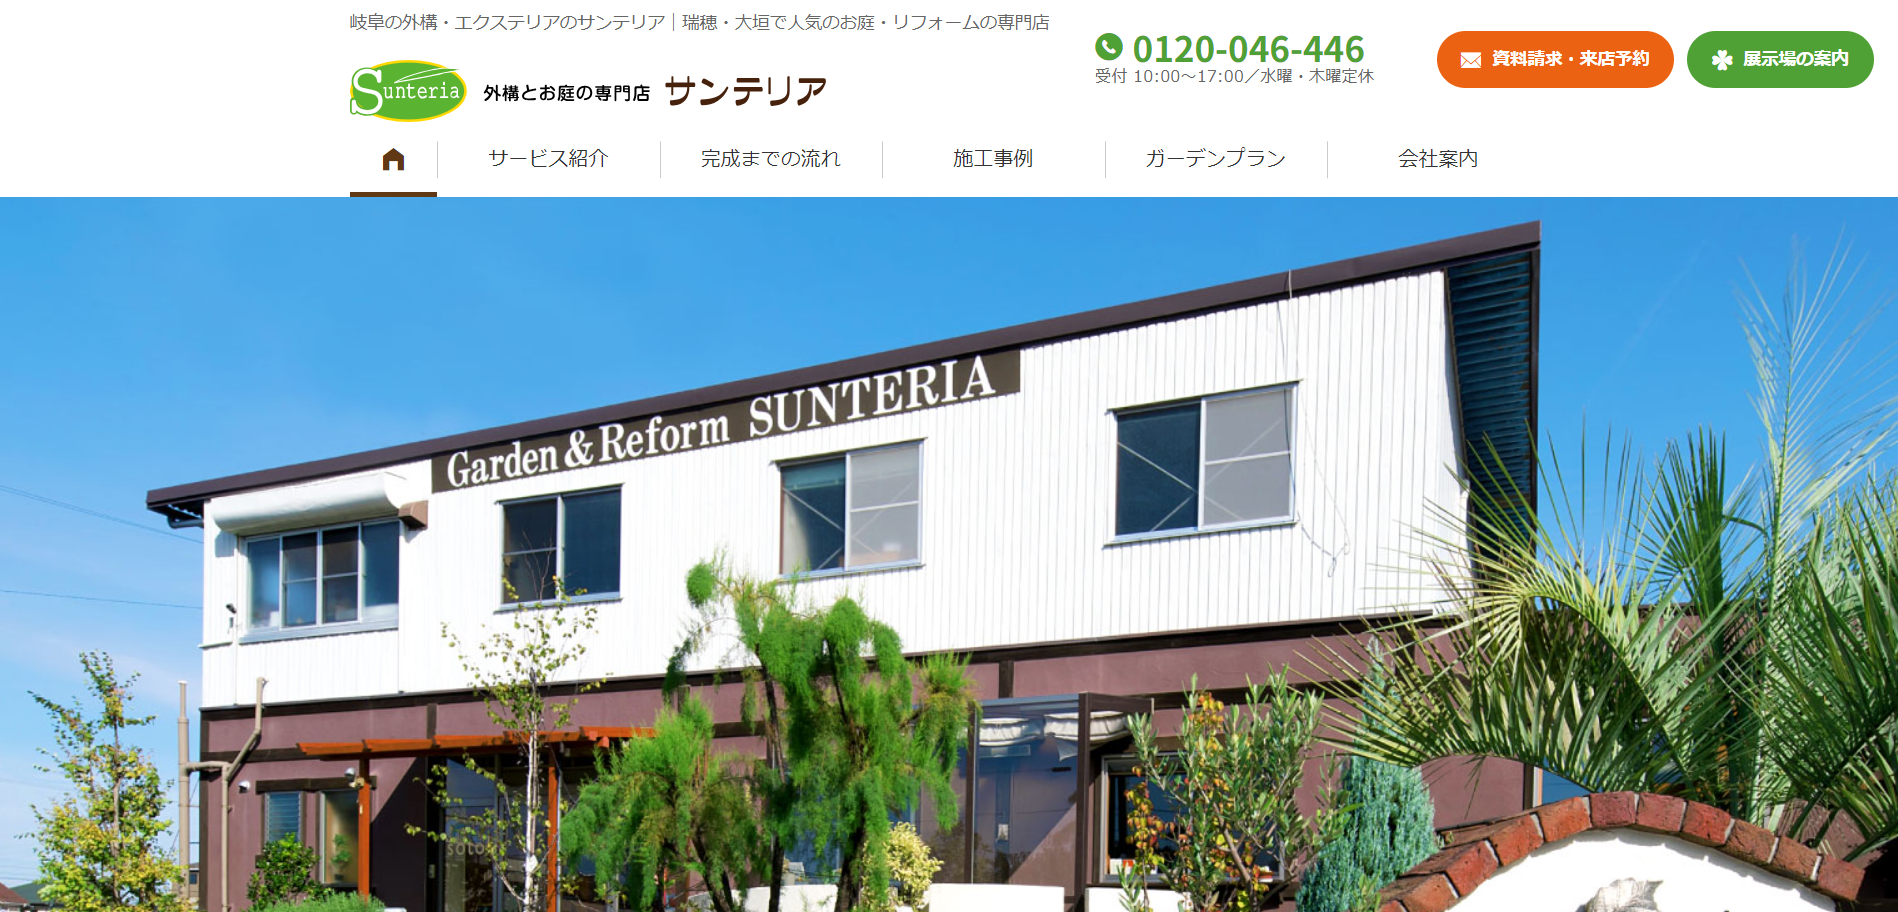 岐阜県で評判のおすすめ外構業者ランキング 第8位 サンテリア